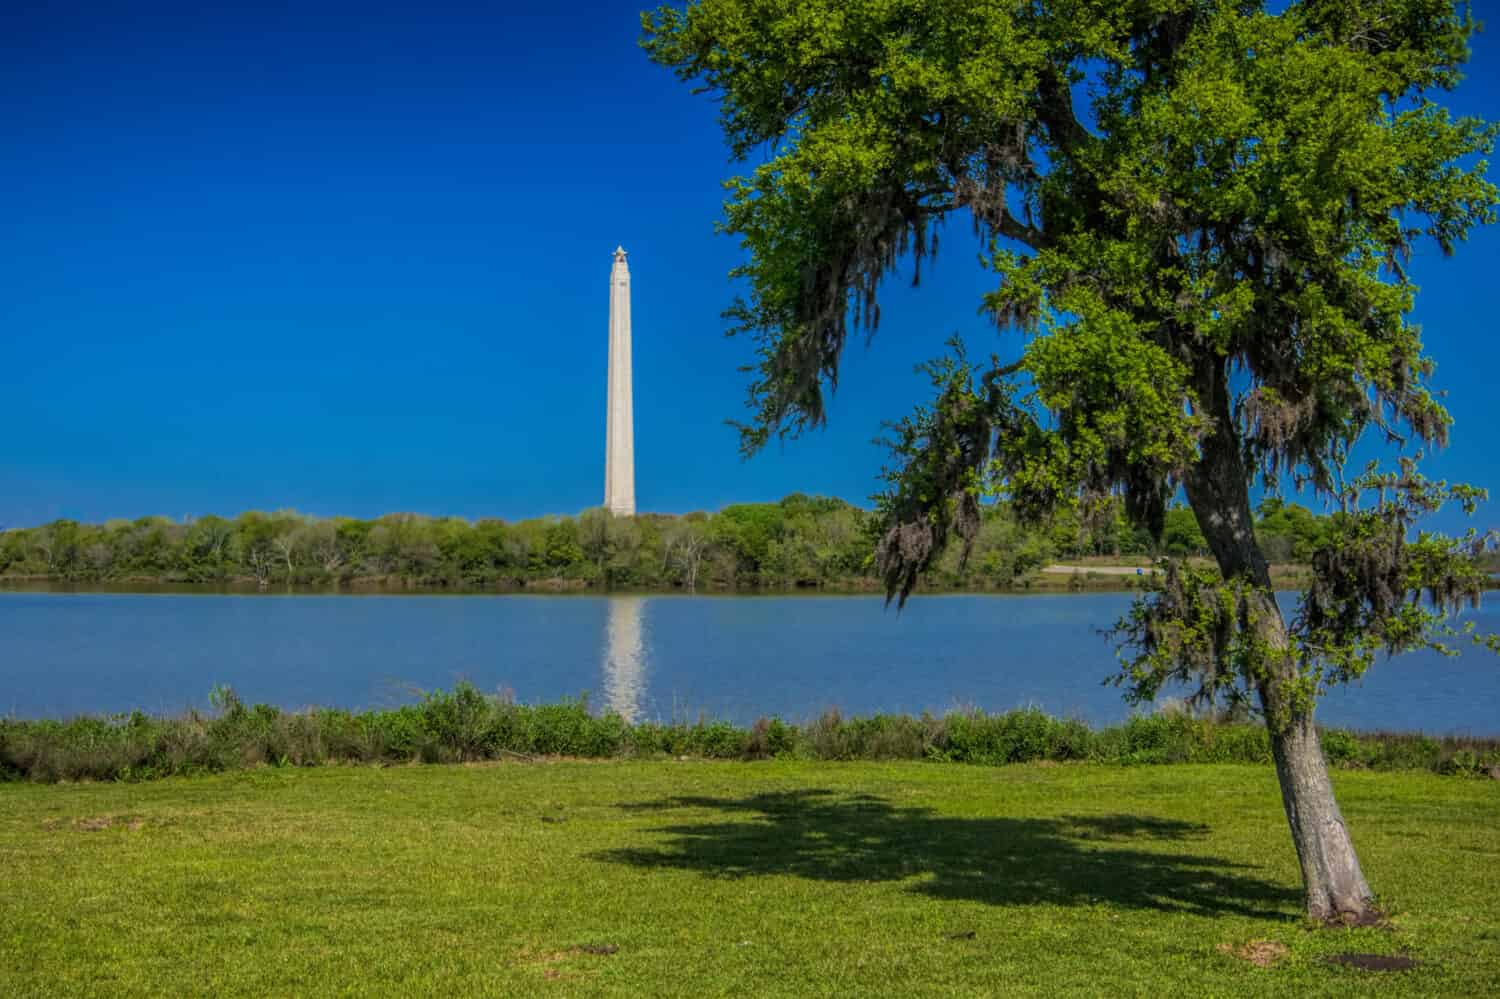 Monumento di San Jacinto sotto il cielo blu di fronte al fiume.